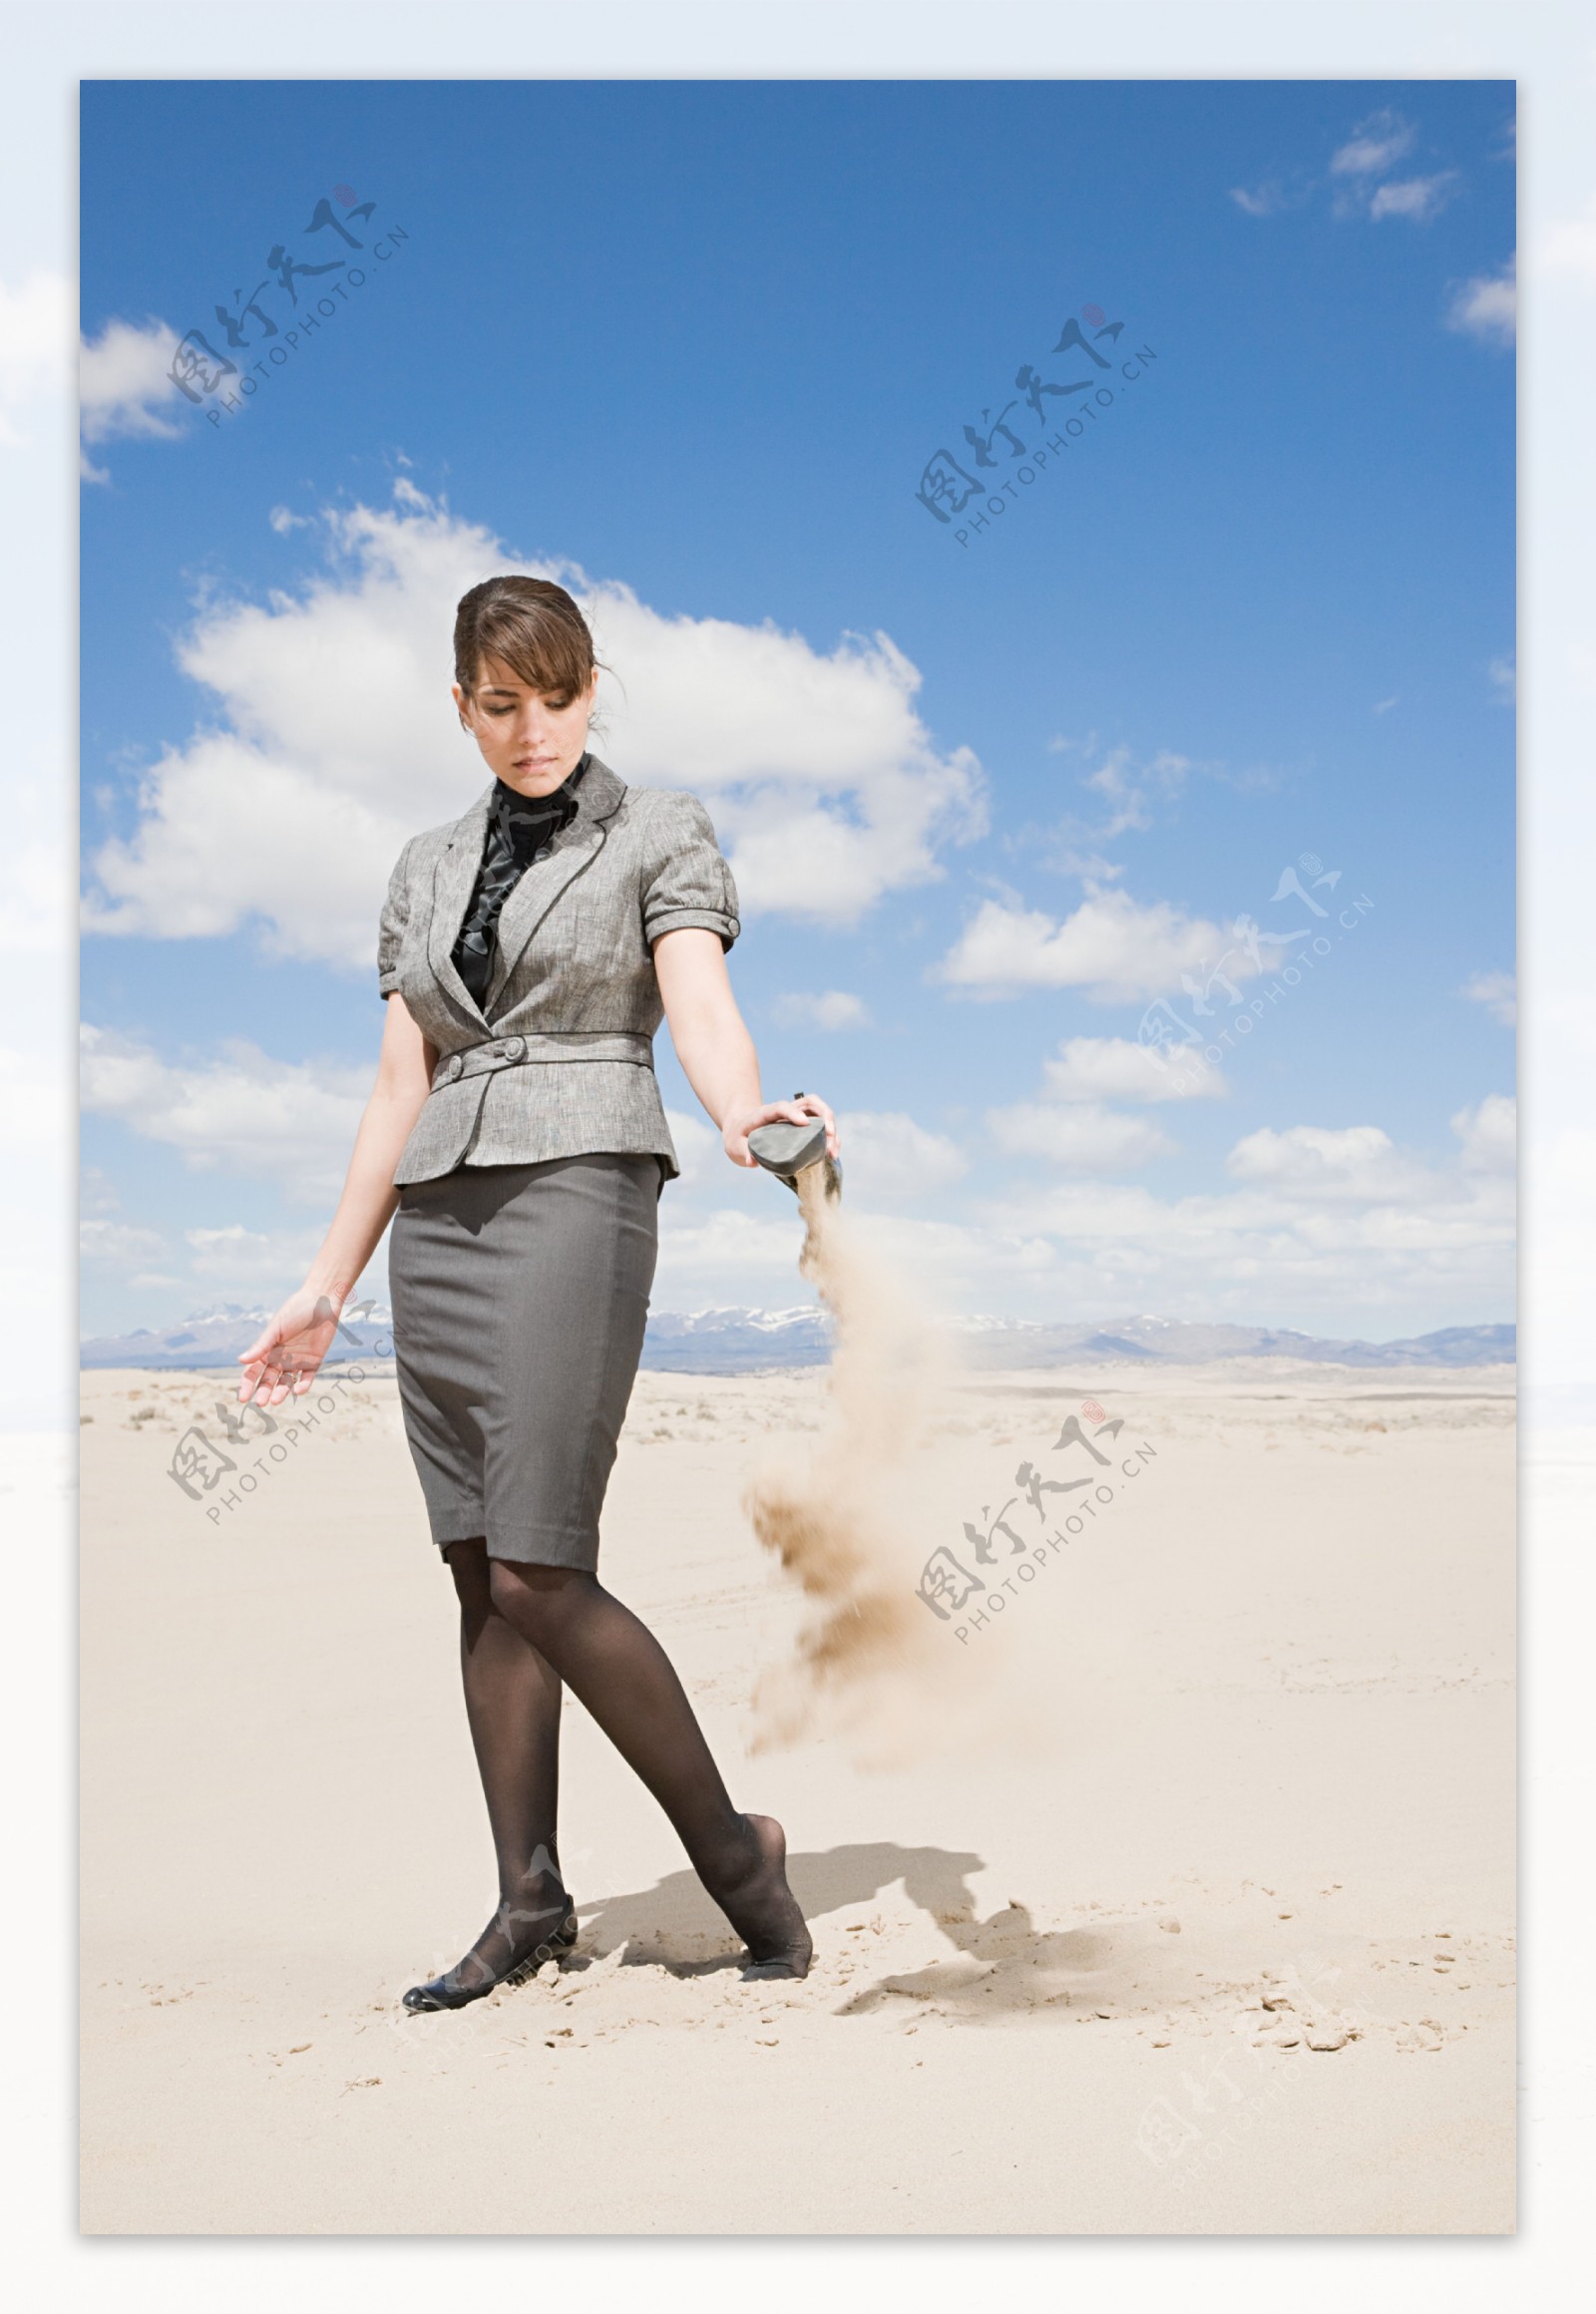 倒高跟鞋里沙子的女人图片